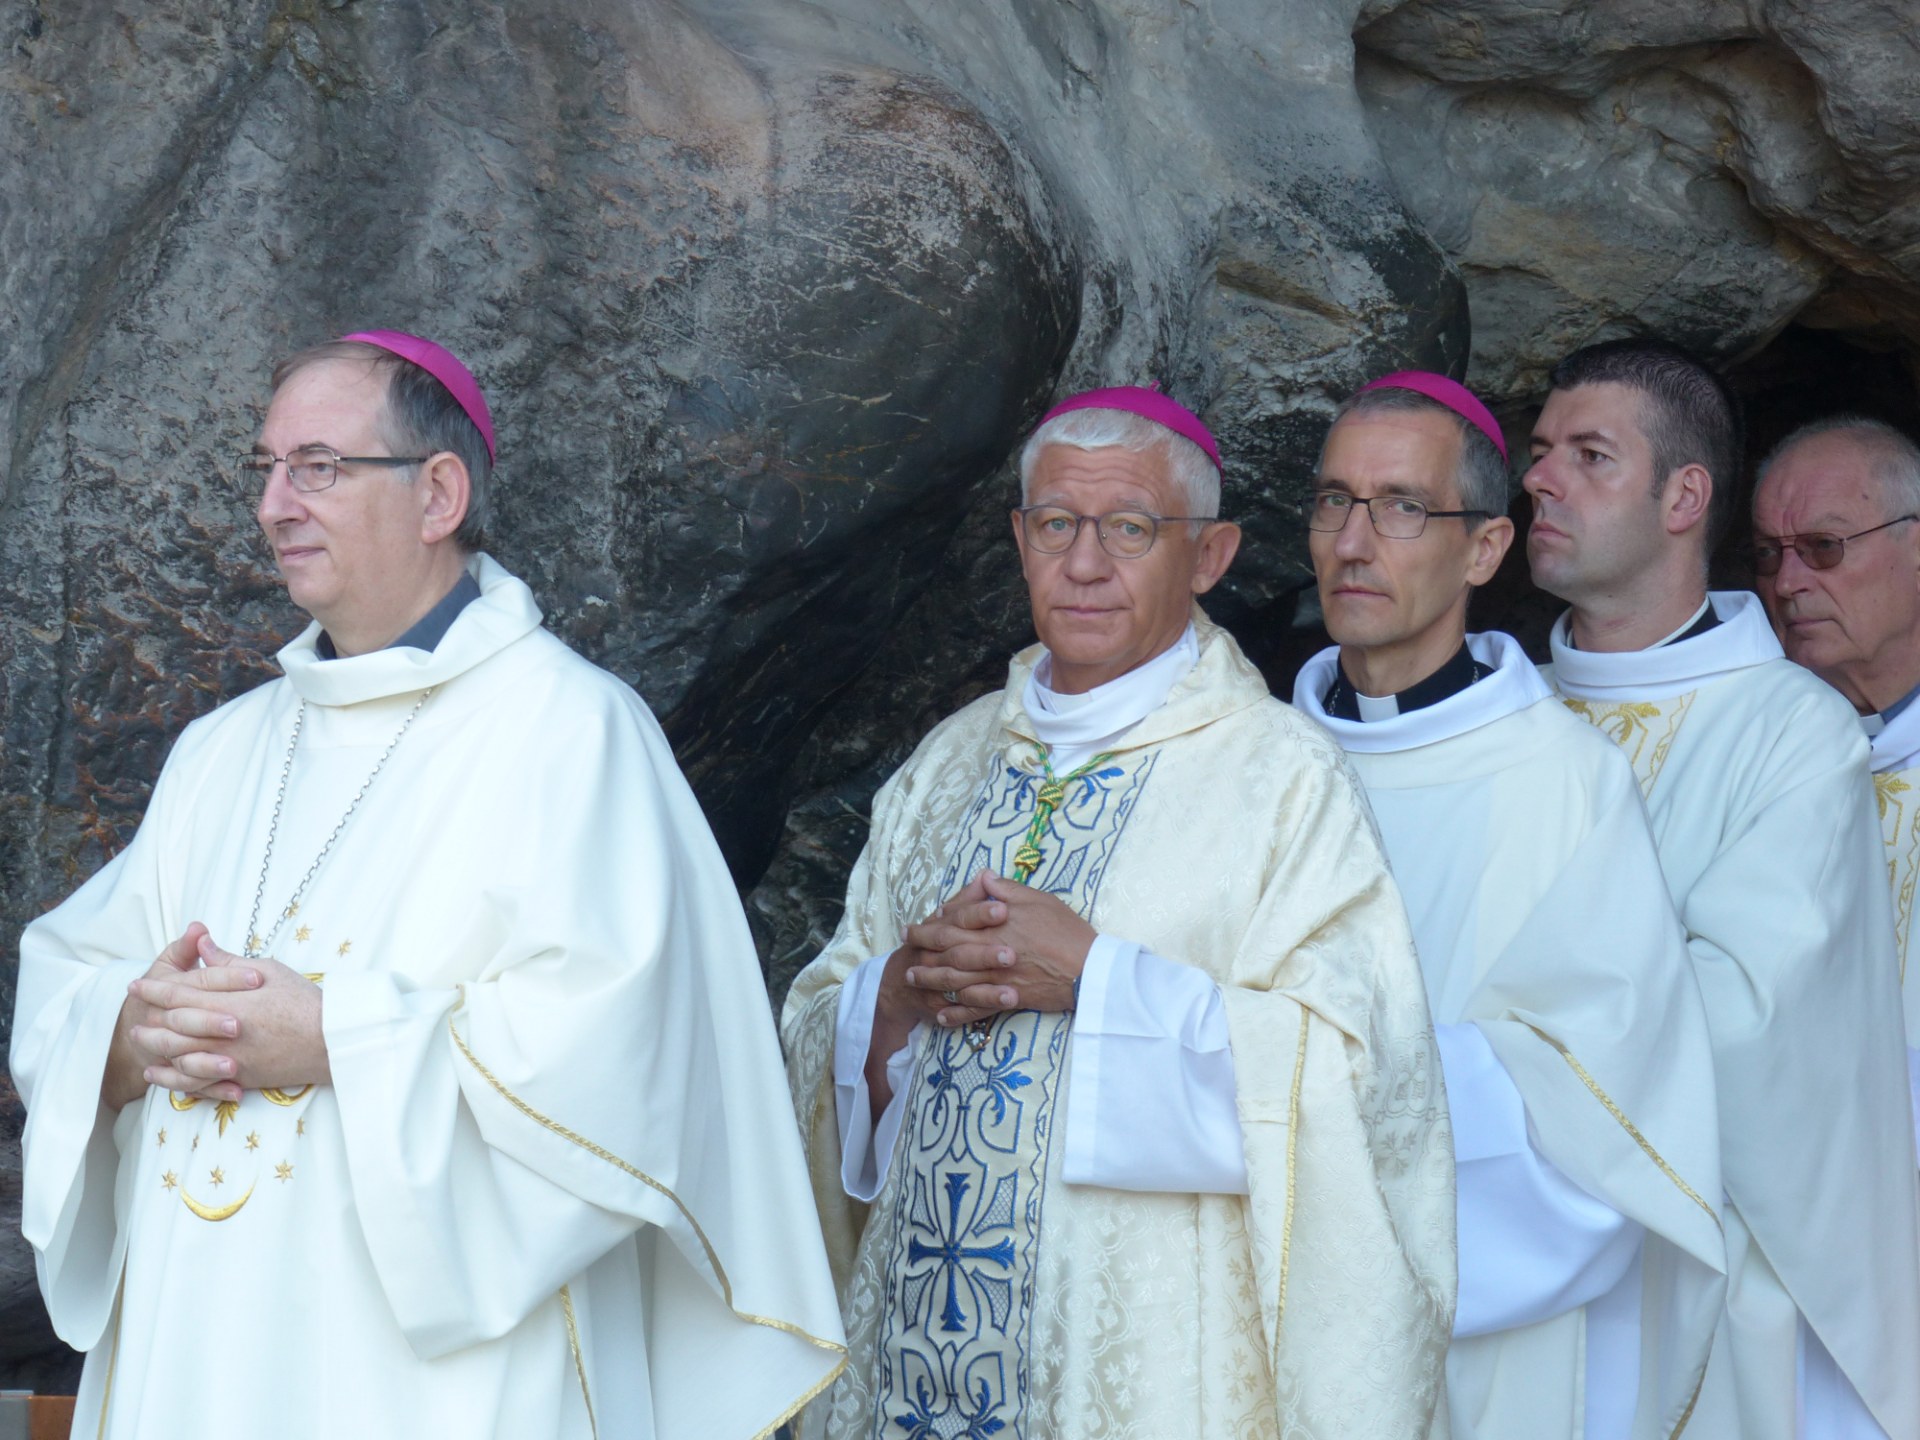 Lourdes2018-photos messe grotte (40)